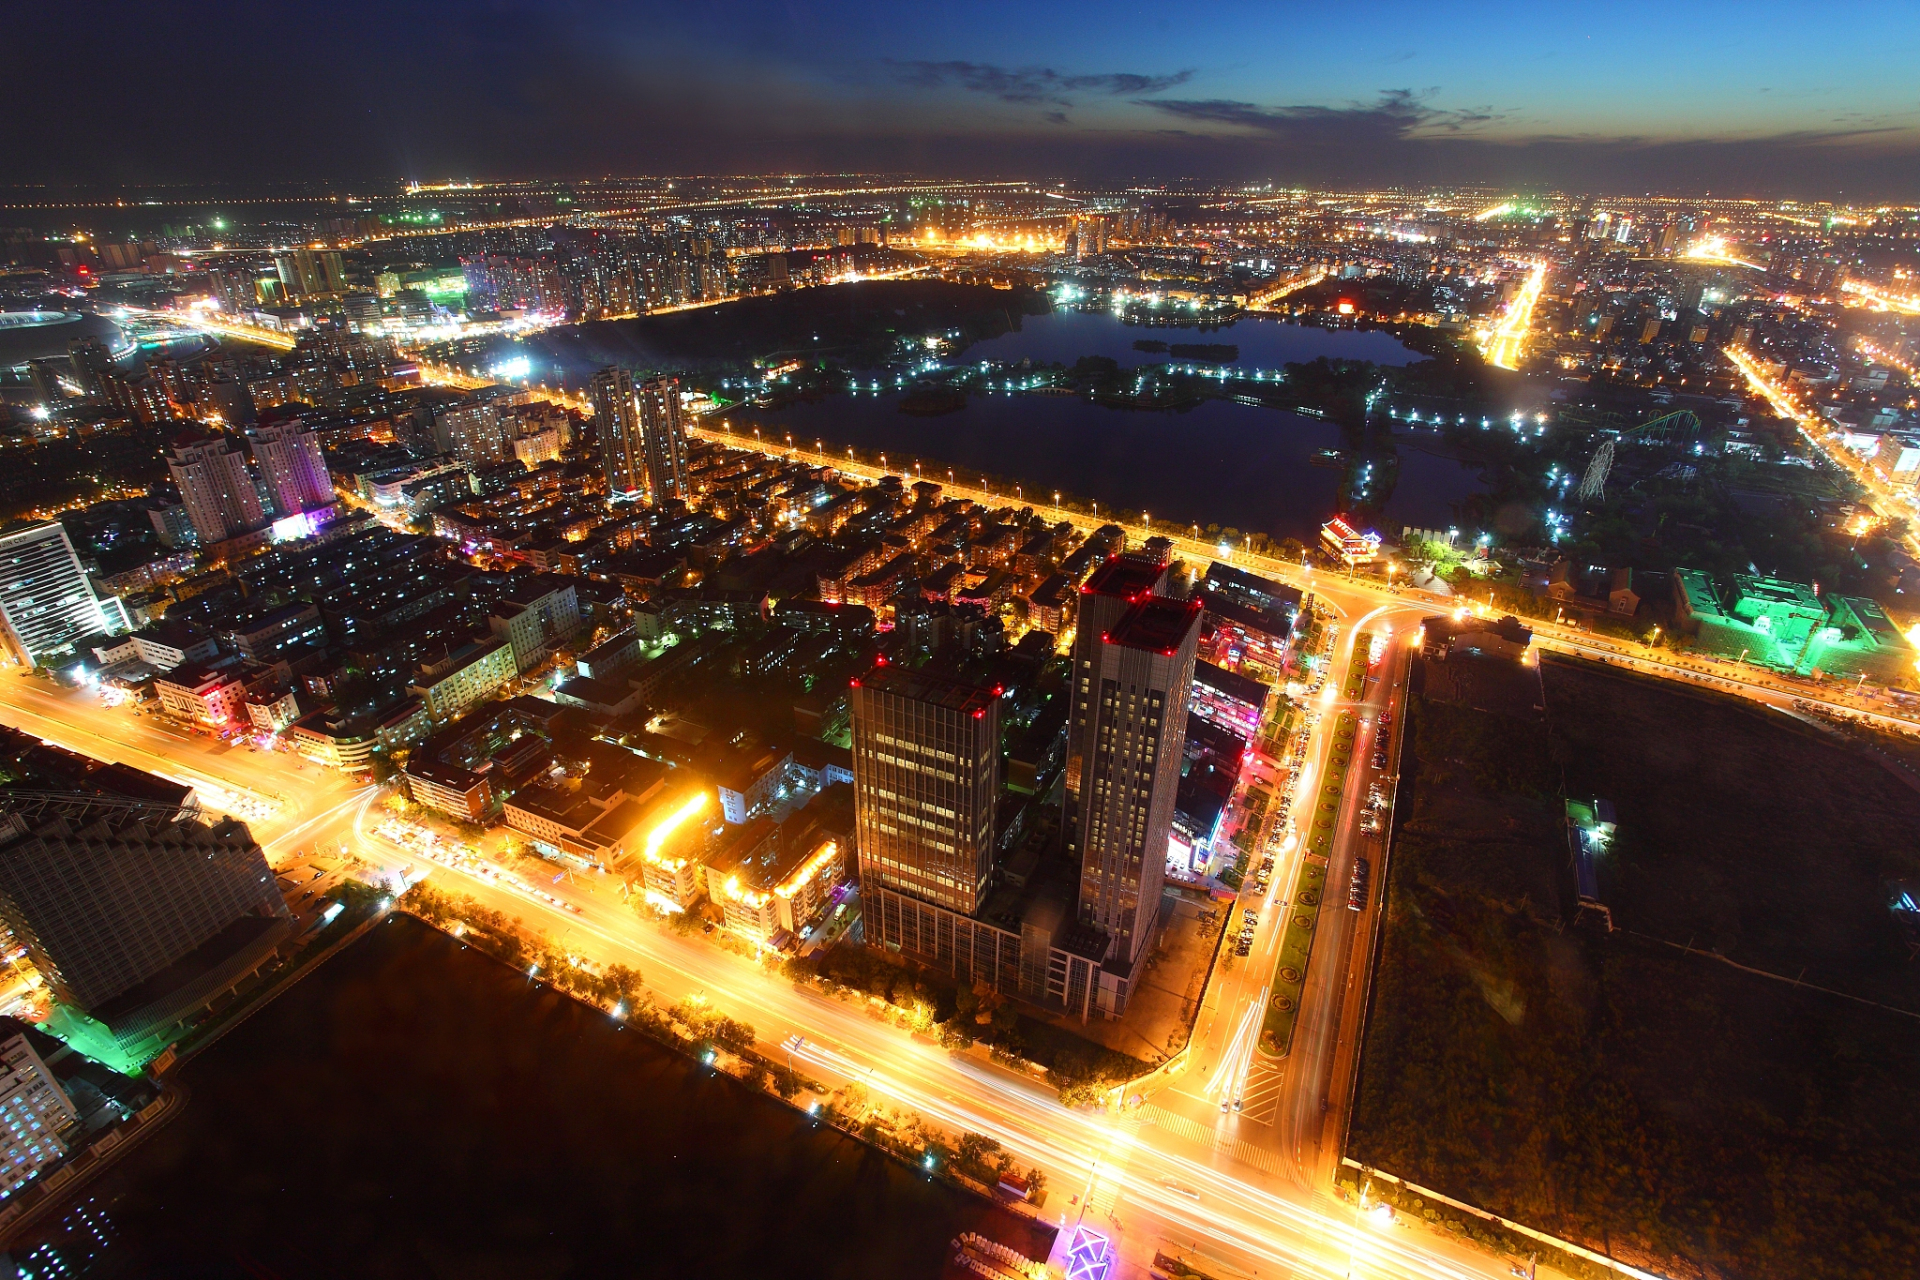 下面,我将从多个角度来介绍唐山市最美的夜景点,让大家更好地了解这些